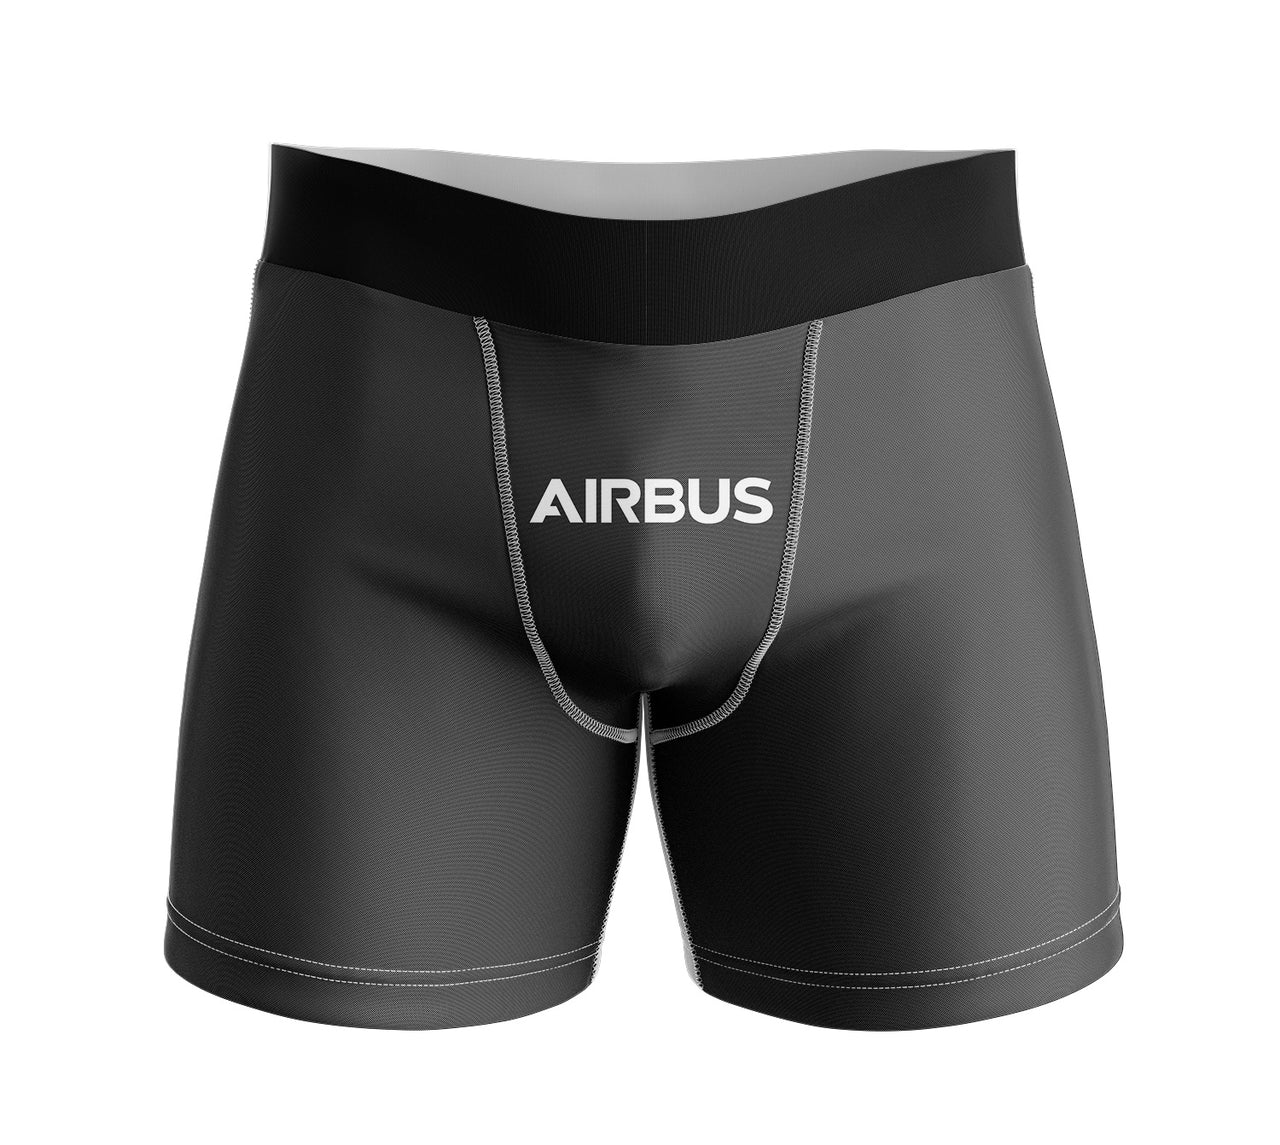 Airbus & Text Designed Men Boxers